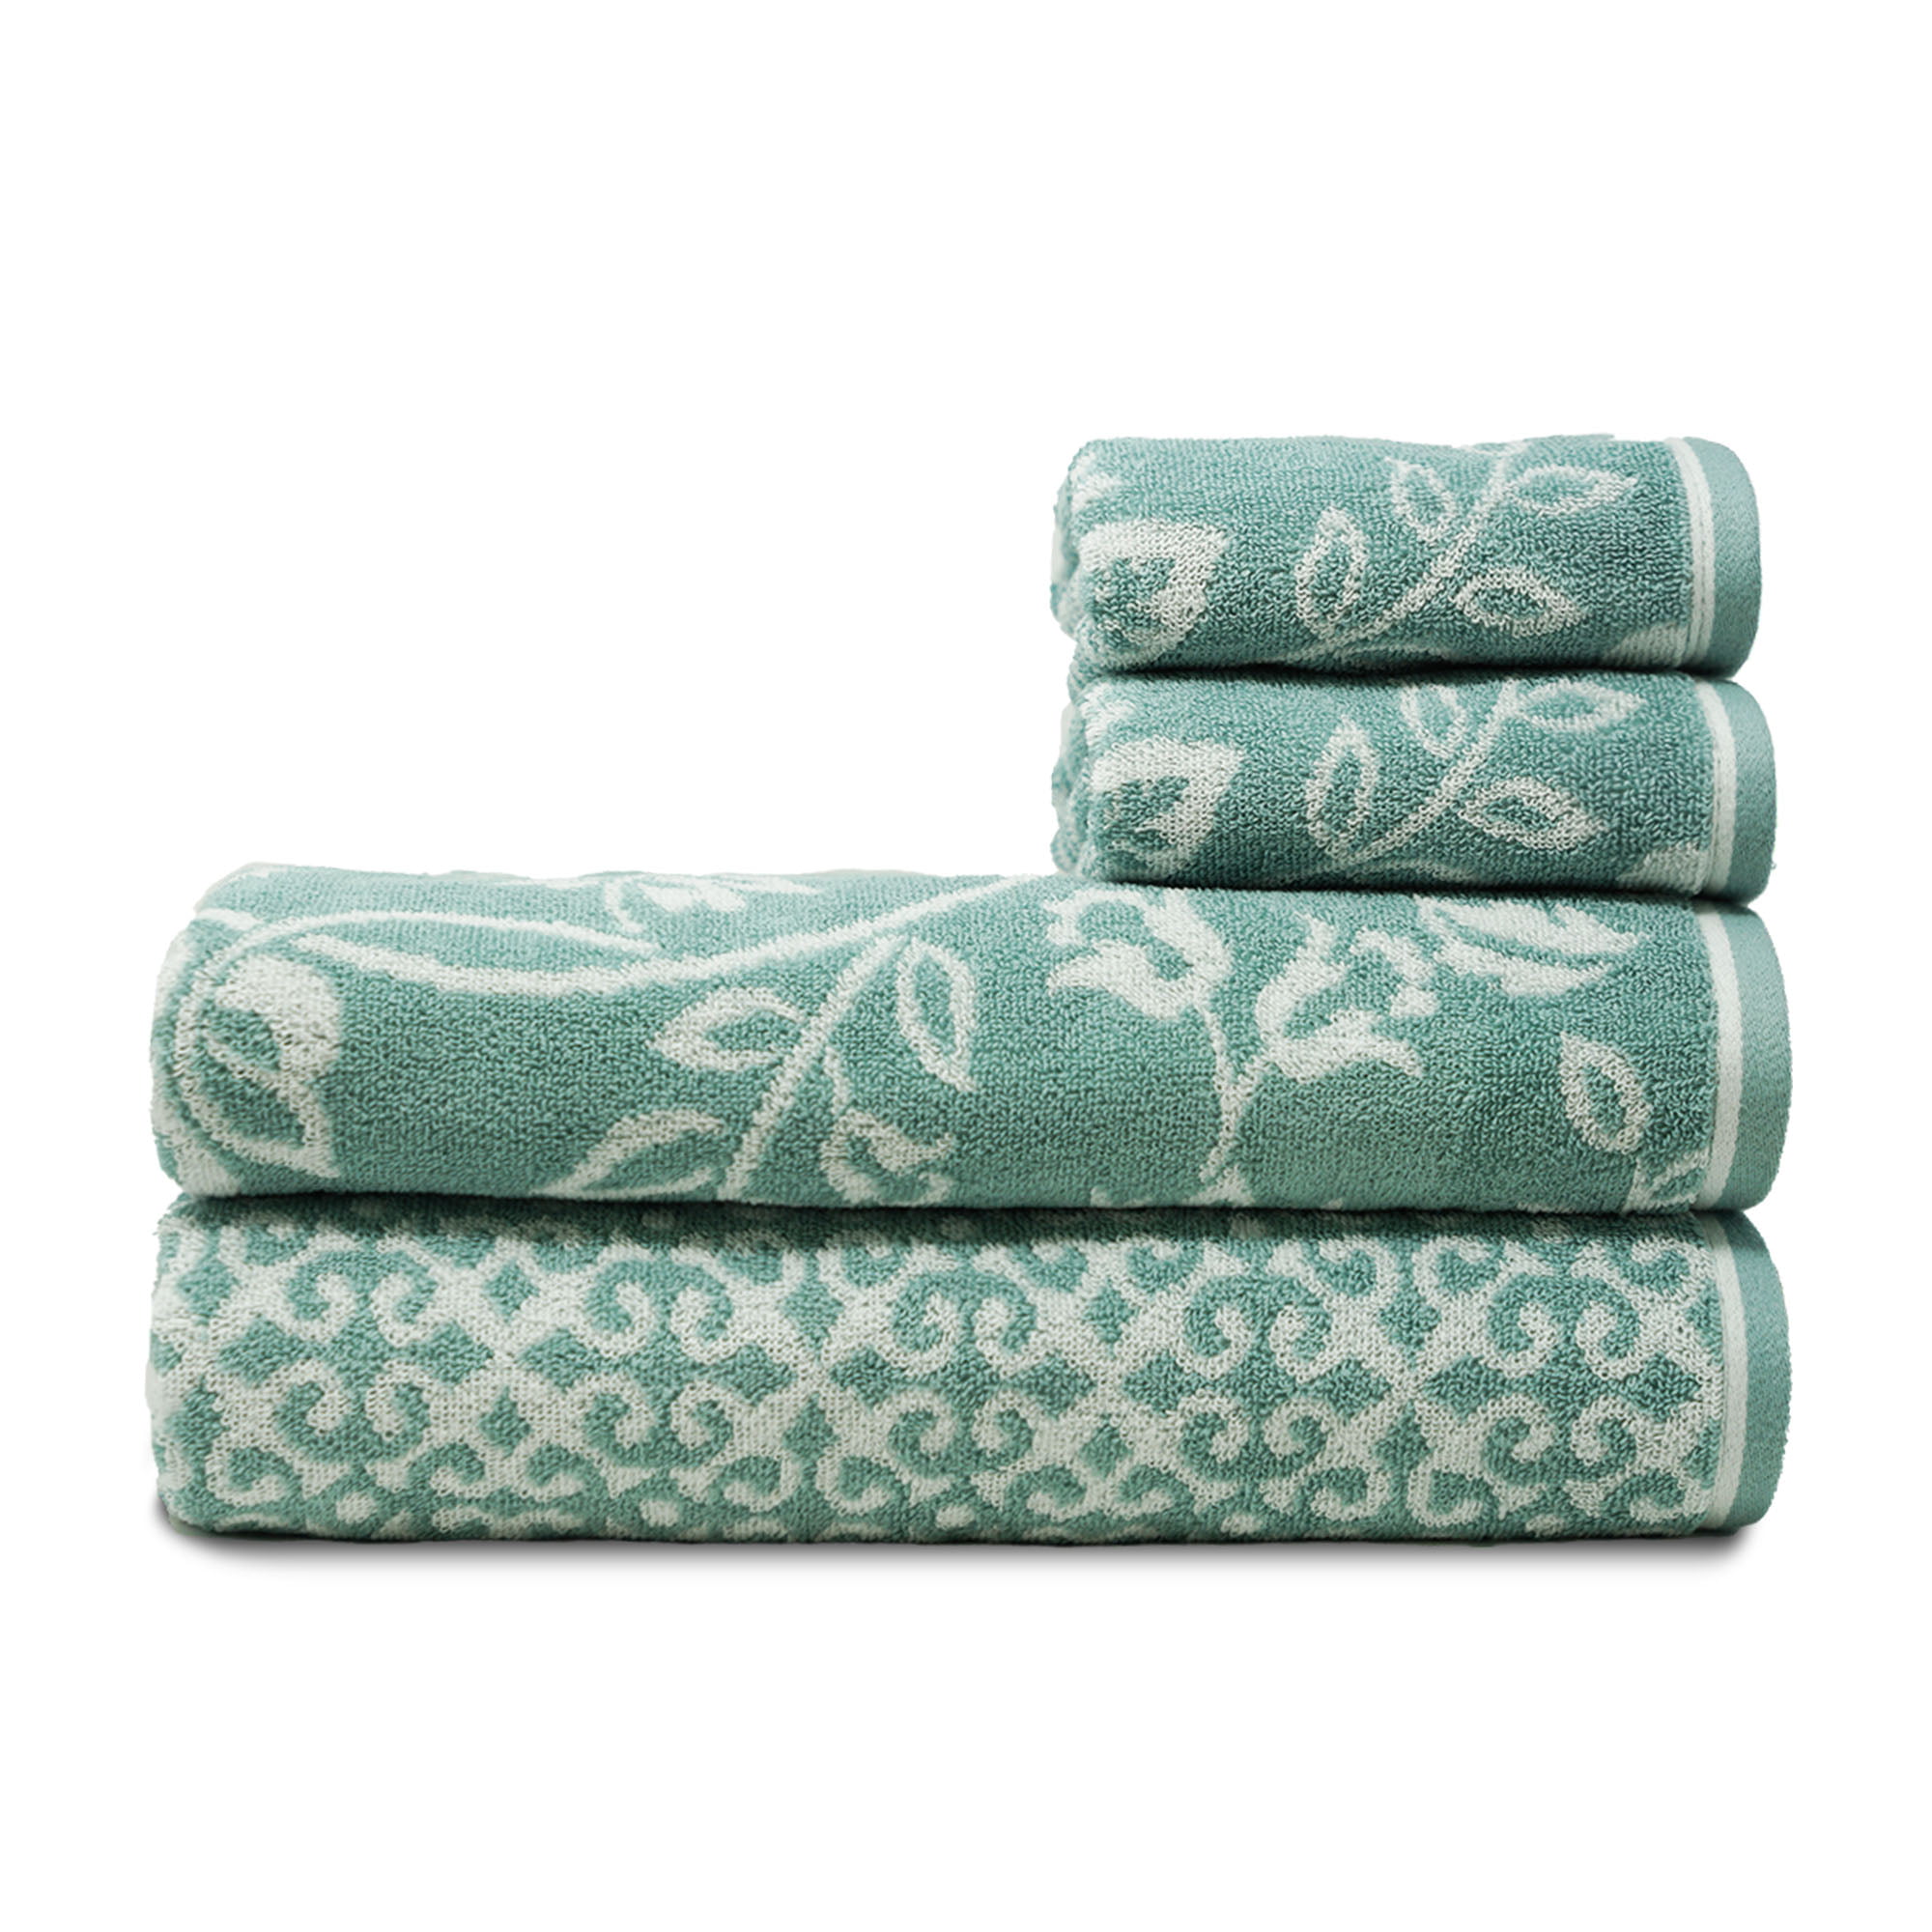 Trident Cotton Bath Towel , Blue,Beige,Multi-color(4 Pack) - Walmart.com